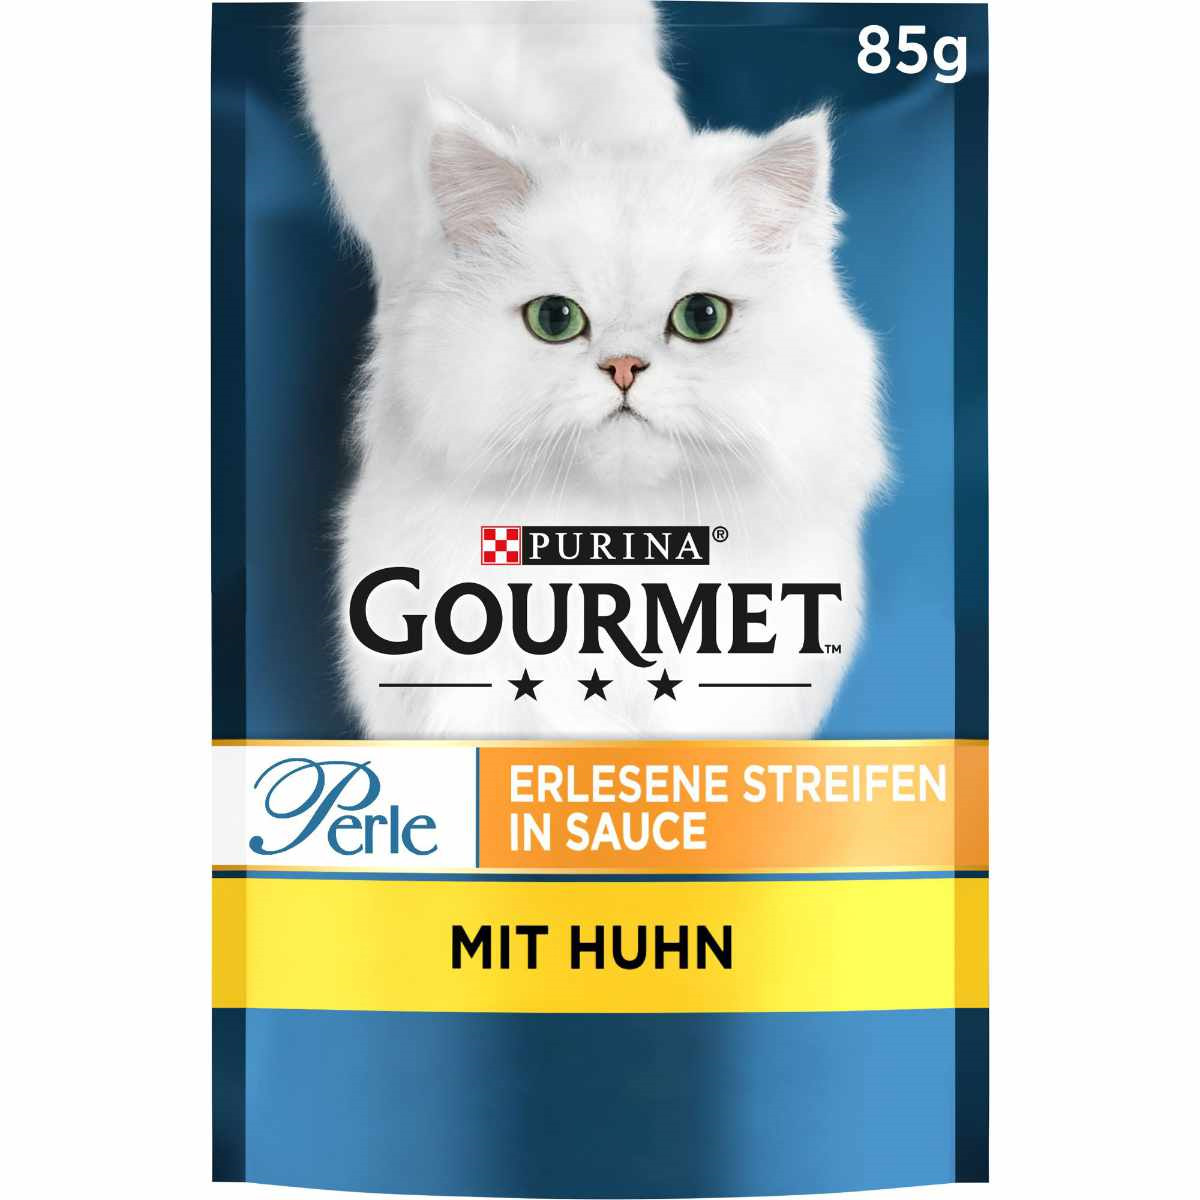 GOURMET Perle Erlesene Streifen in Sauce mit Huhn 26x85g